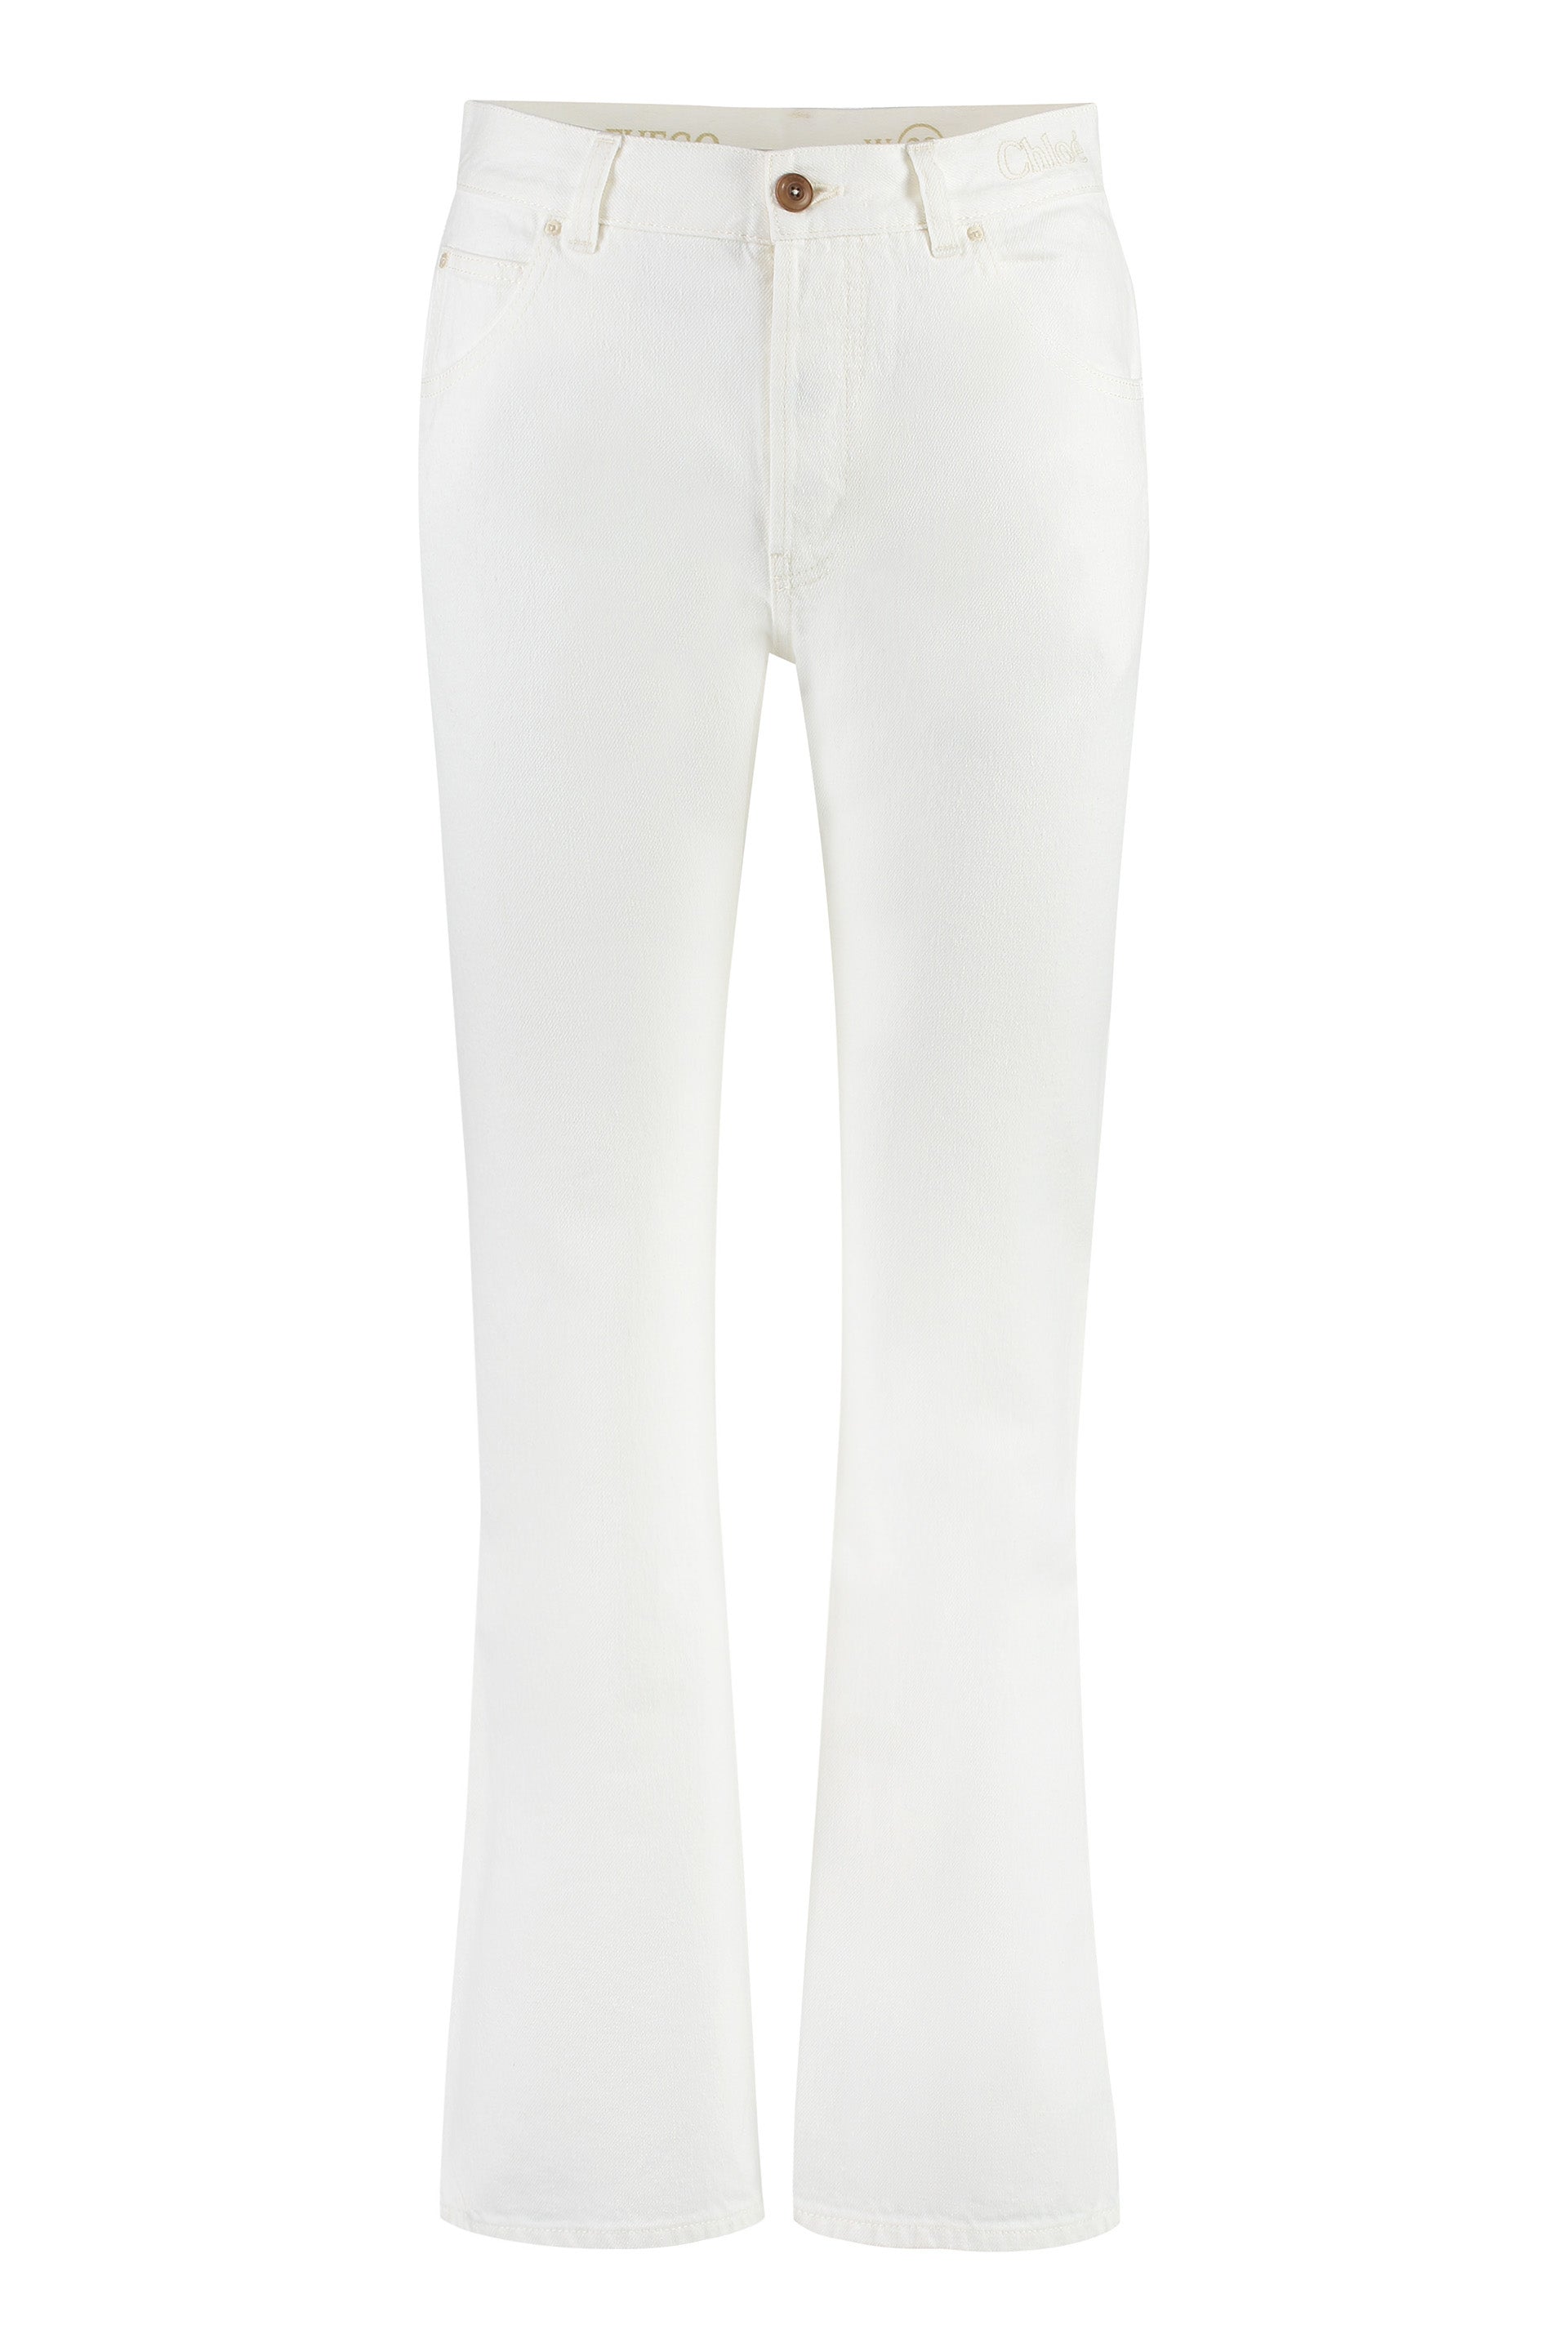 Chloé Women's White 5-pocket Straight-leg Jeans For Fw23